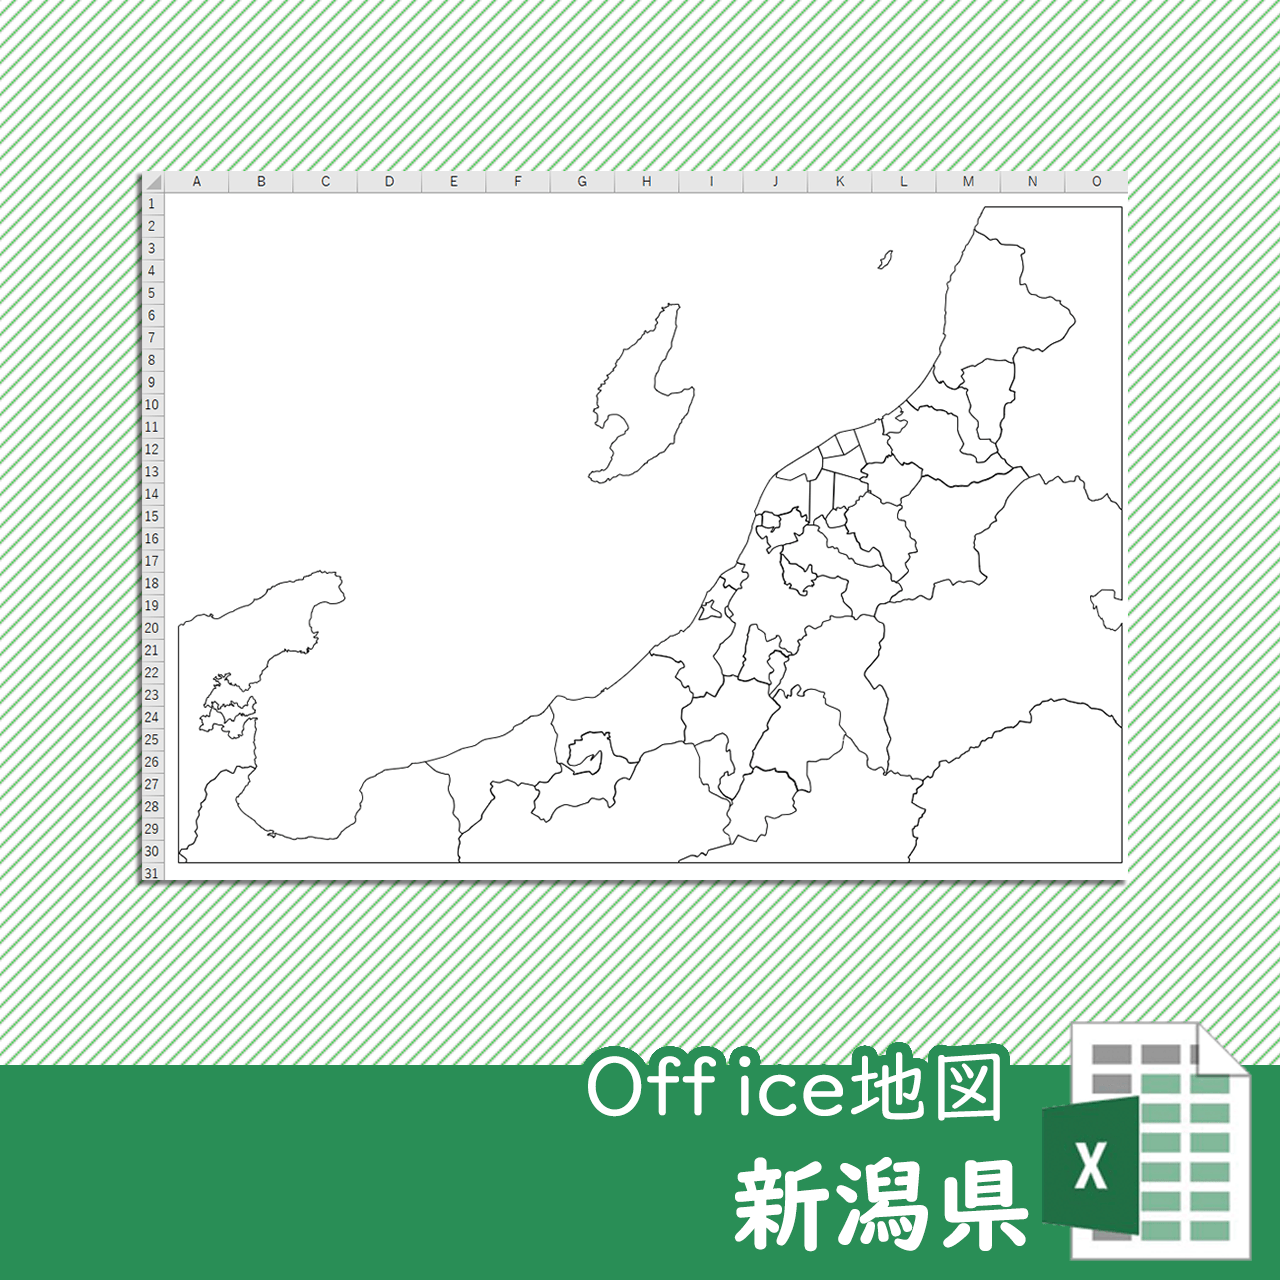 新潟県のOffice地図のサムネイル